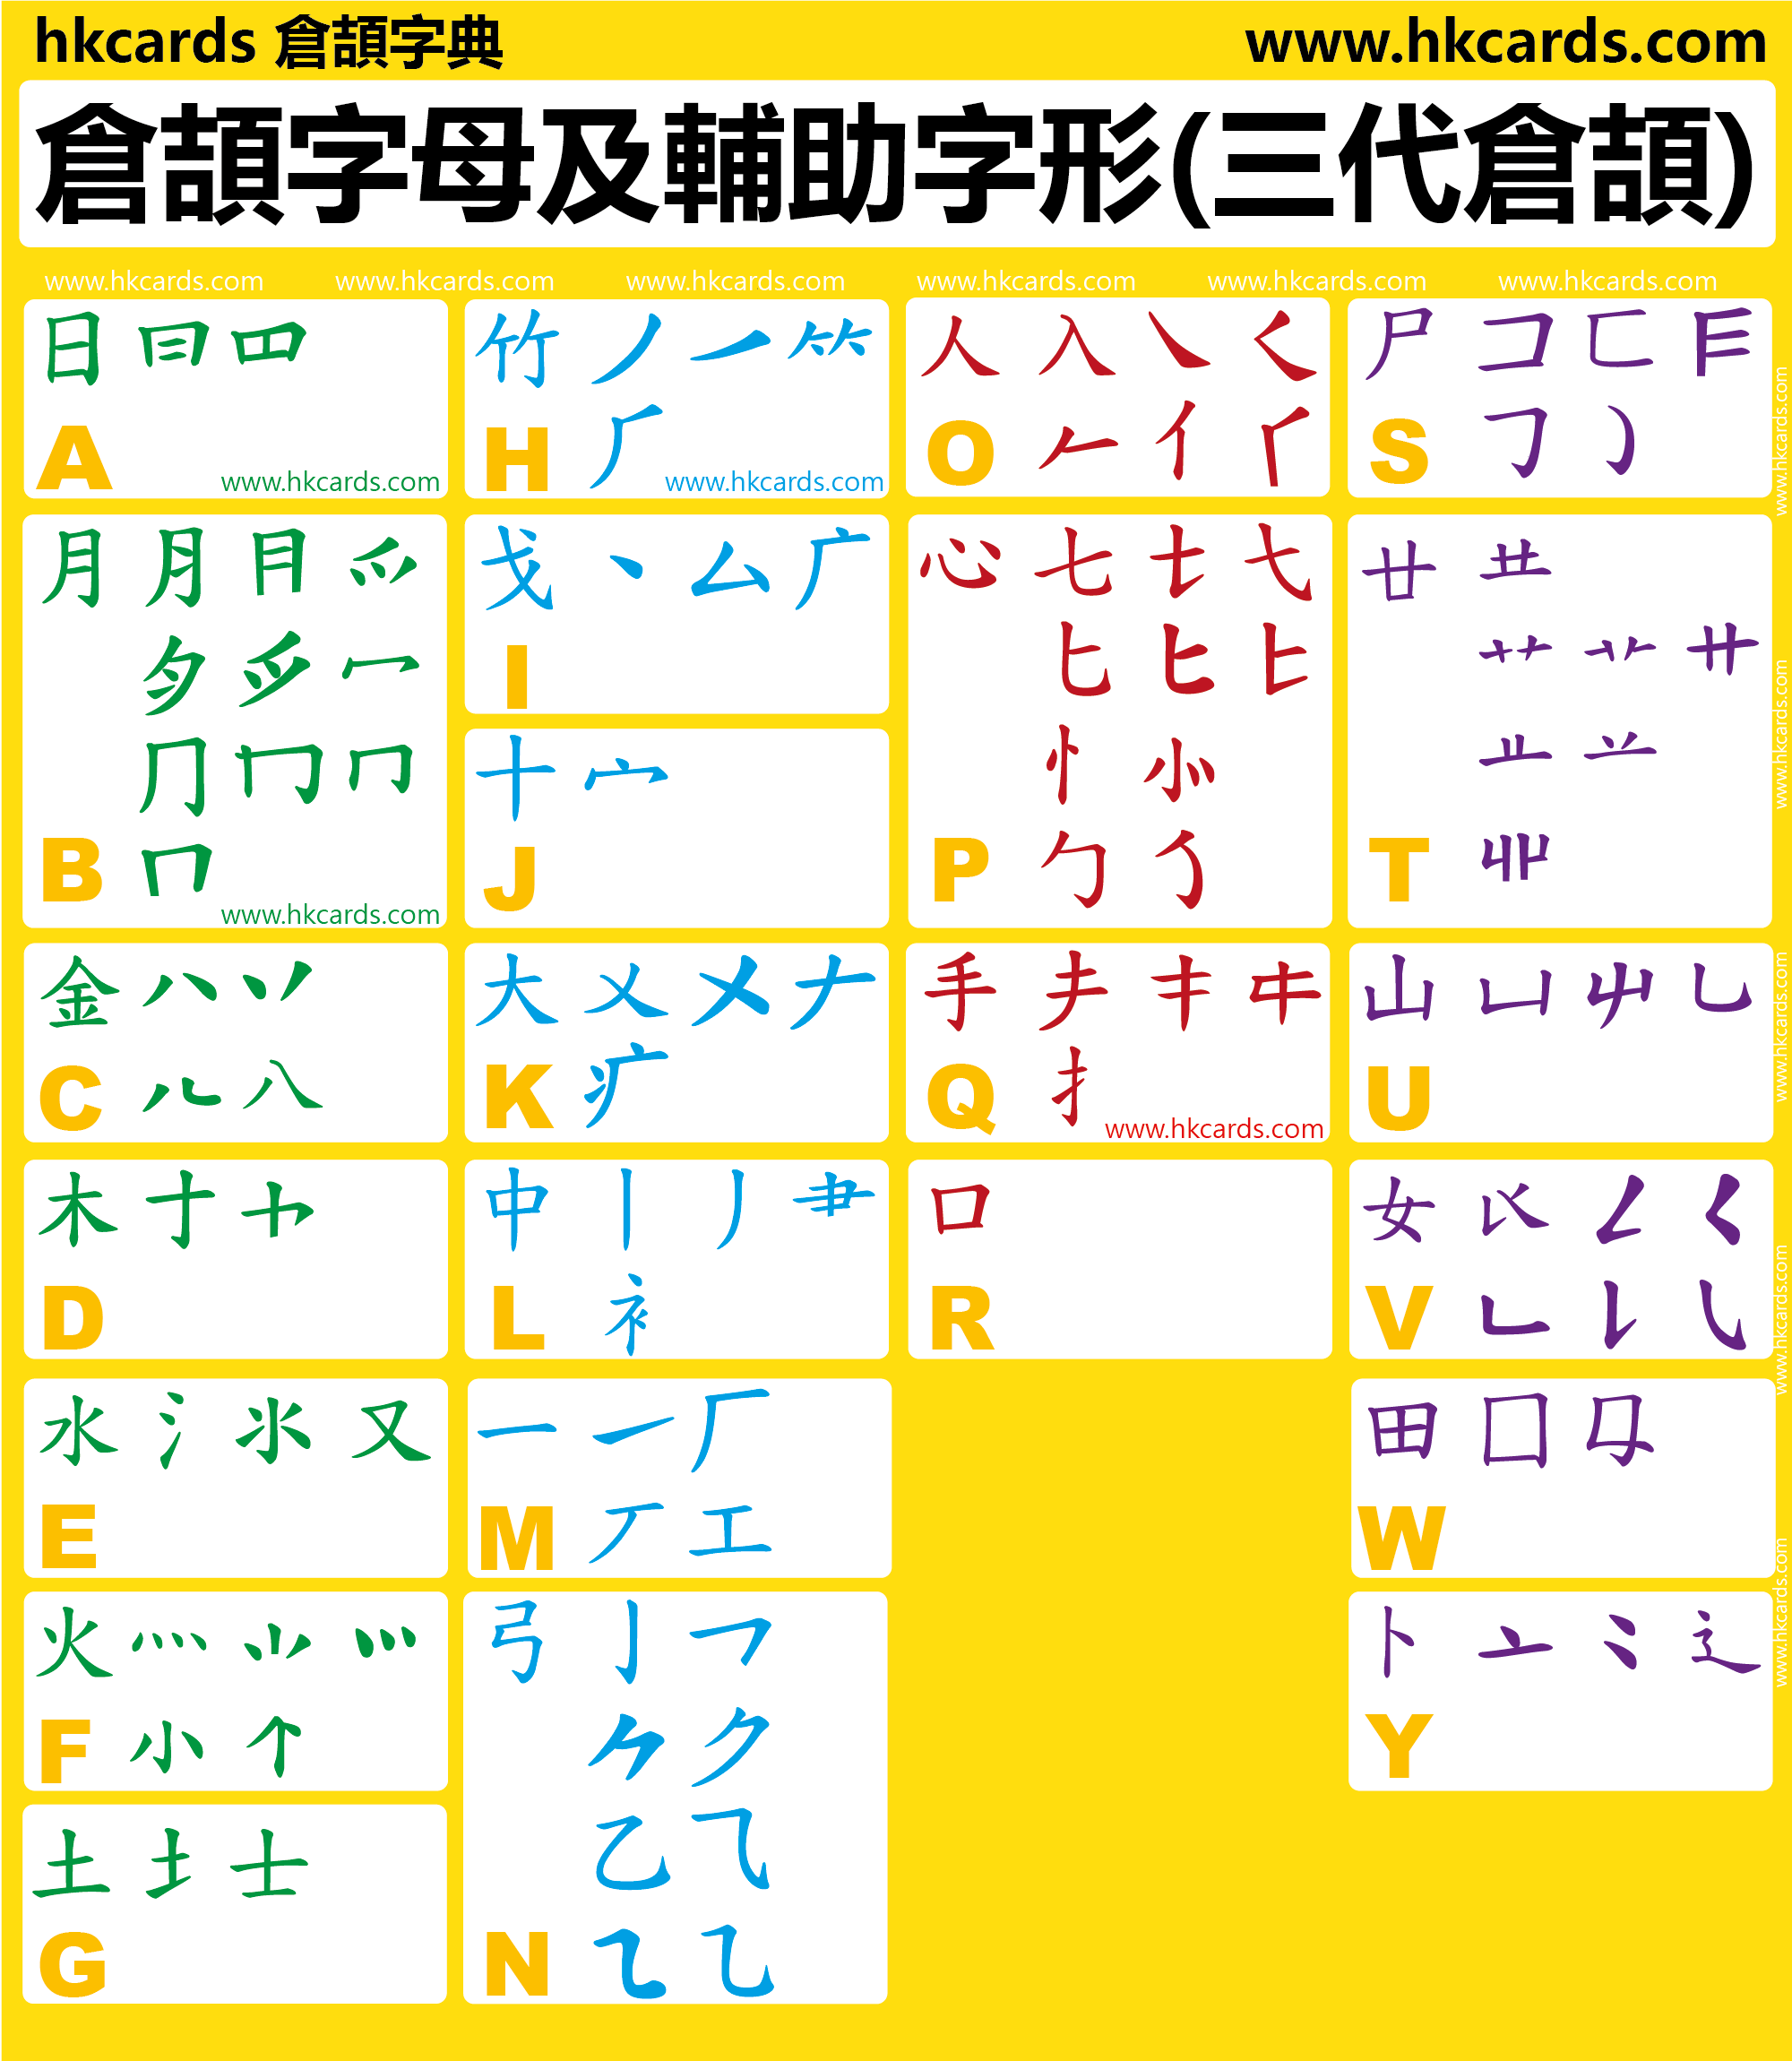 倉頡字母及輔助字形表(三代倉頡)